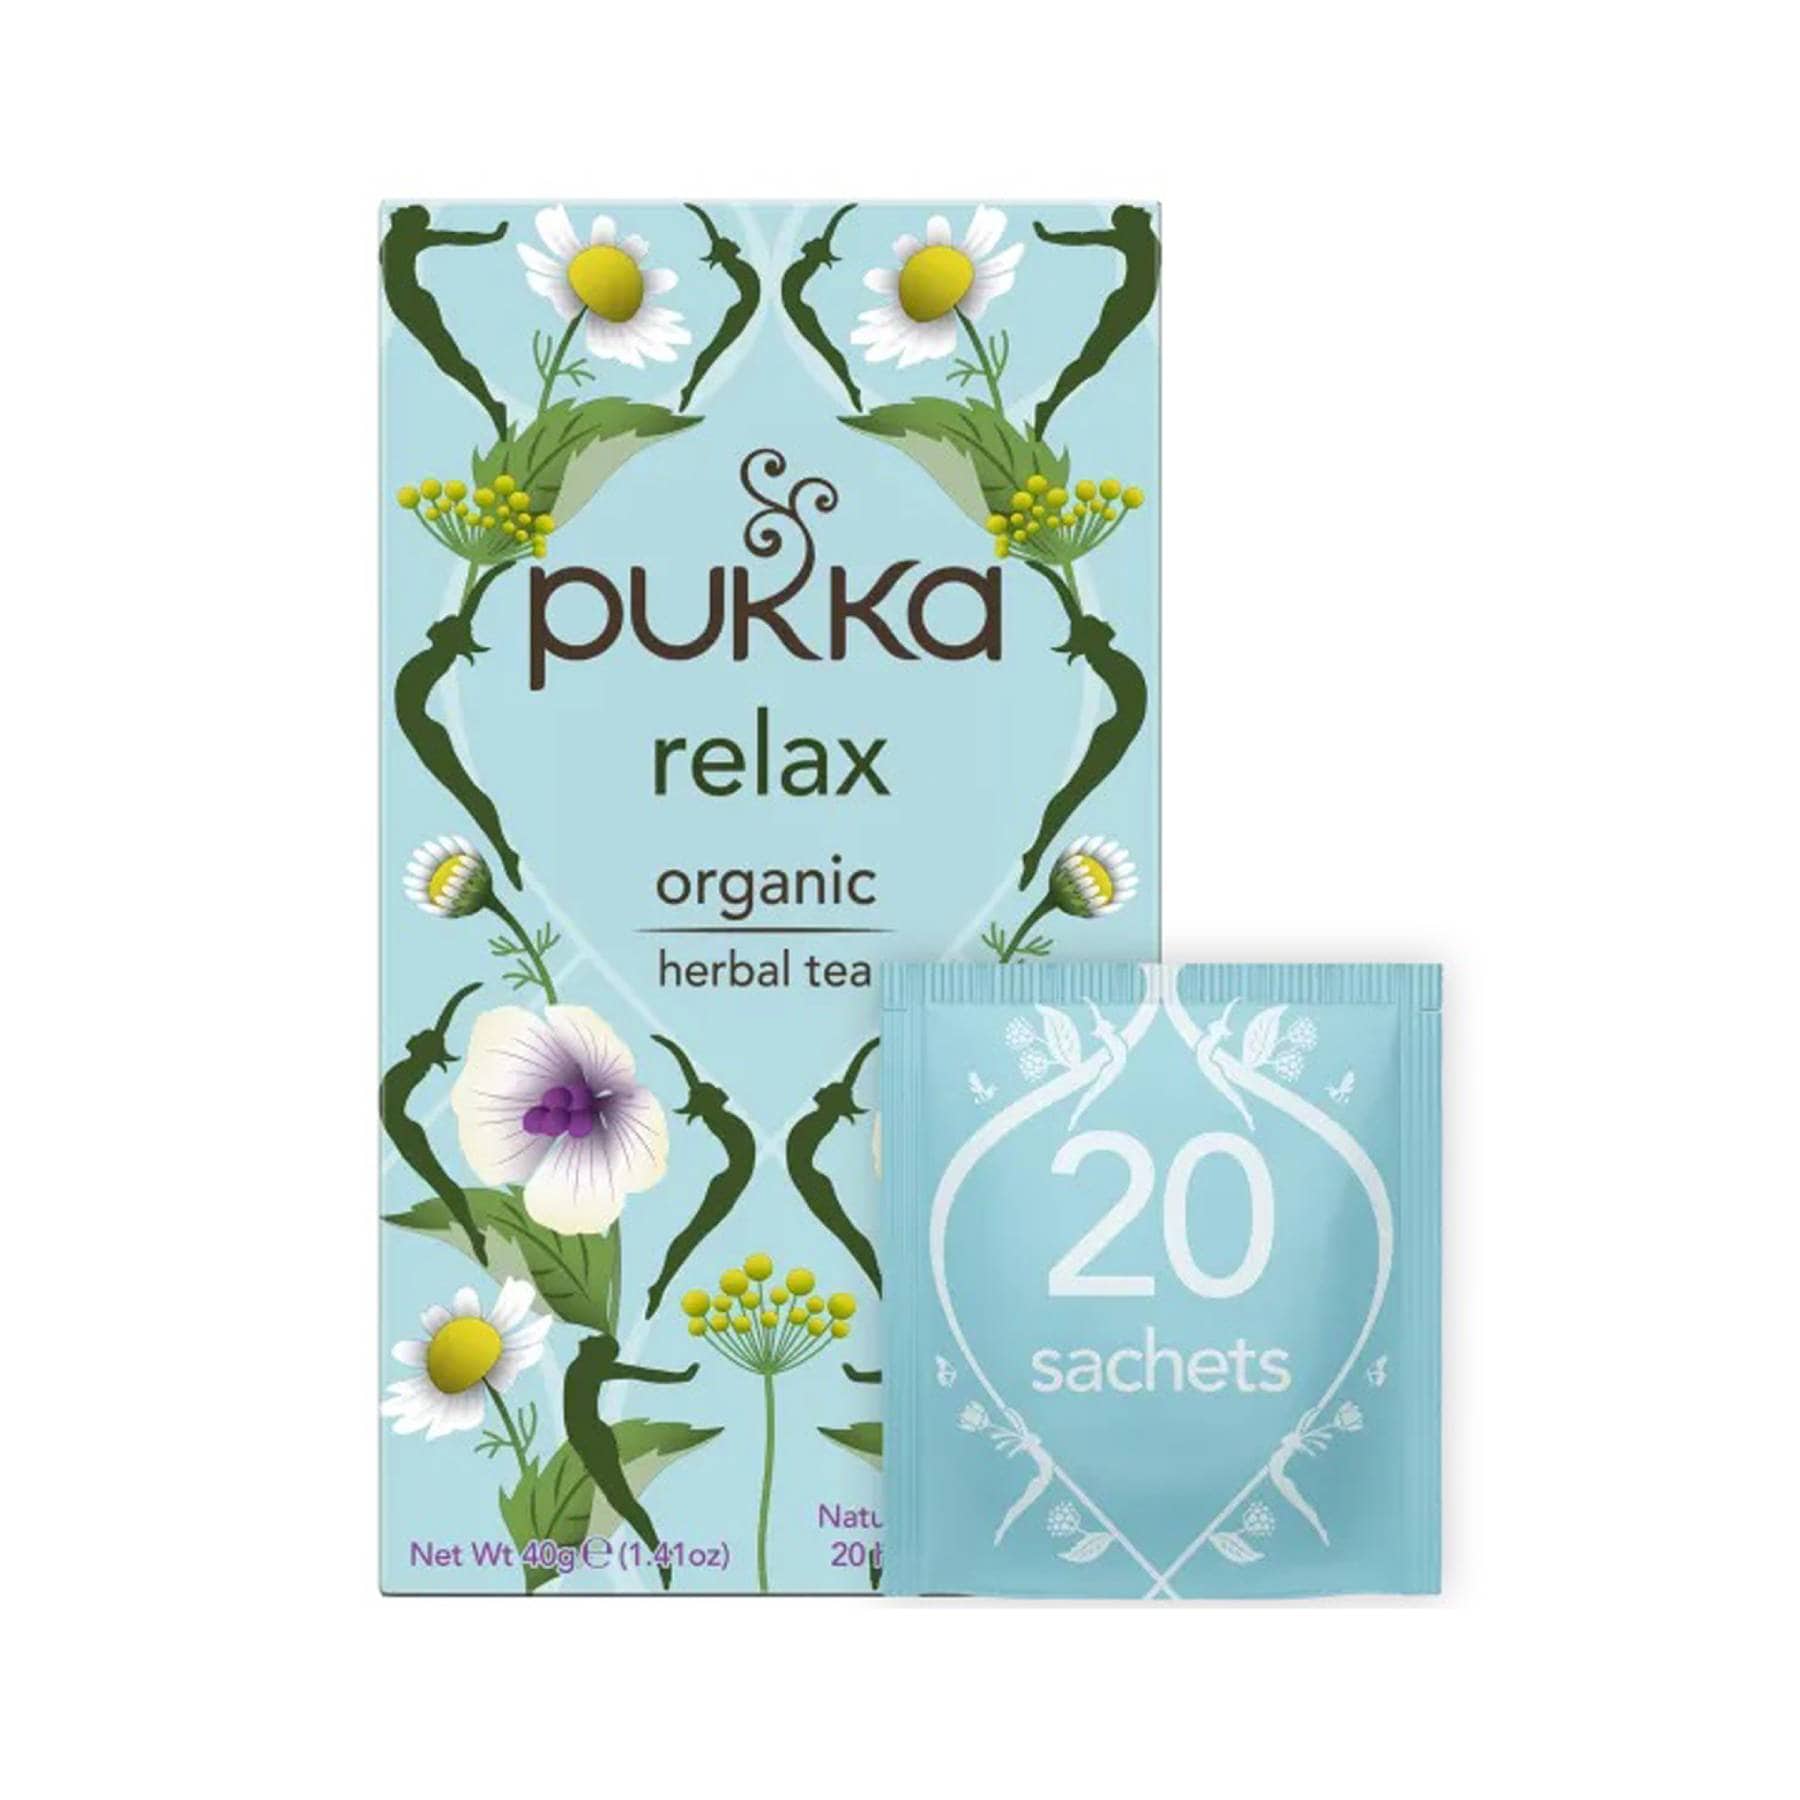 Pukka relax 20 tea bags